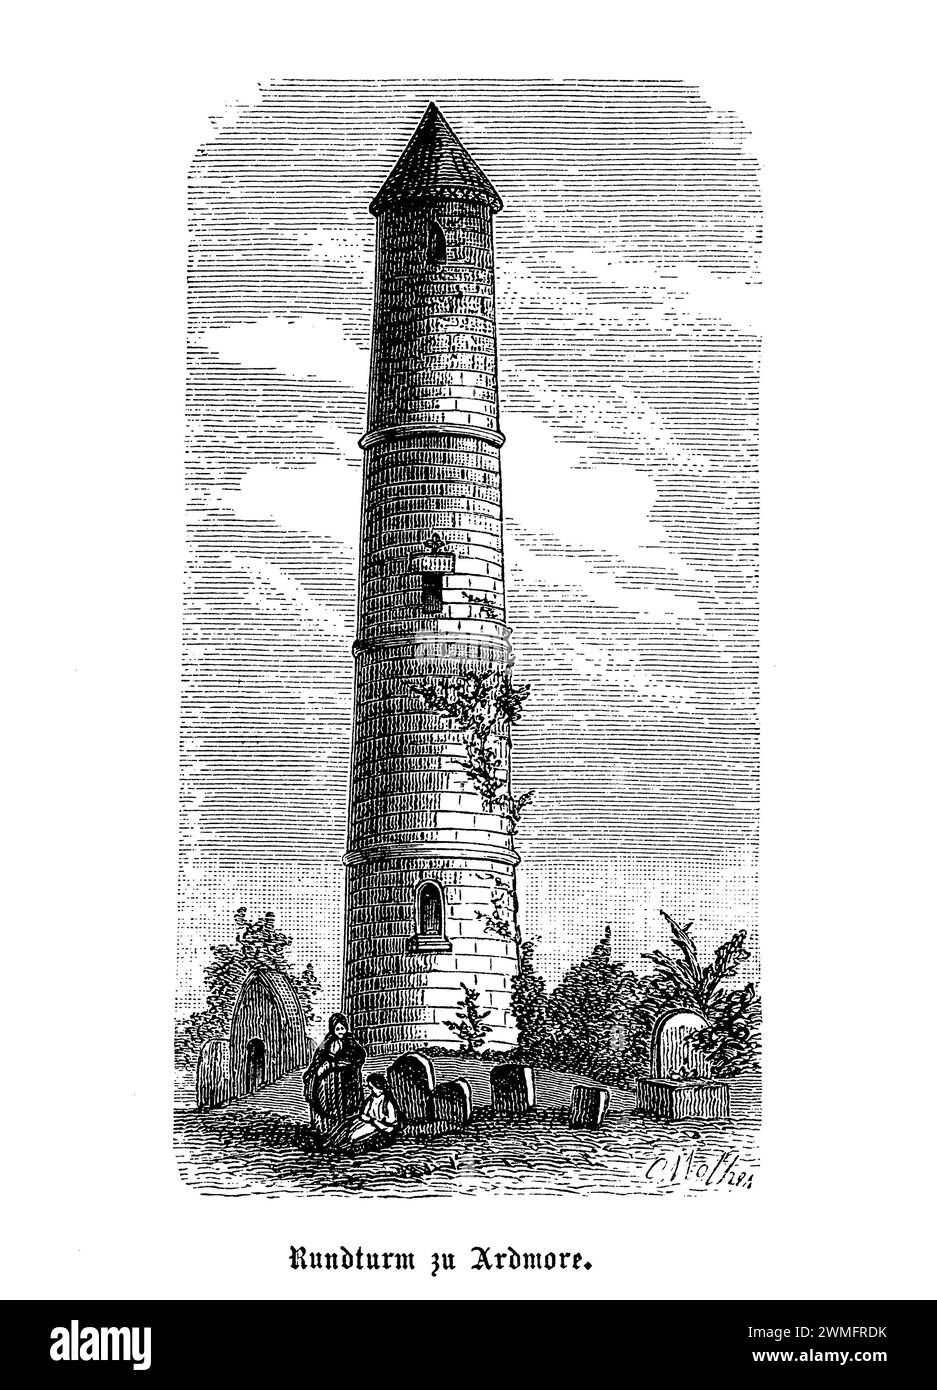 Der Ardmore Round Tower in Irland bietet einen Sprung in die mystische und zerklüftete Landschaft der irischen Geschichte. Dieses gut erhaltene frühchristliche Monument liegt im alten Küstendorf Ardmore im County Waterford und ist ein stiller Zeuge der reichen klösterlichen Vergangenheit Irlands. Der Turm stammt aus dem 12. Jahrhundert und diente vor allem als Glockenturm und Zufluchtsort für die Mönche vor den Wikingerangriffen. Seine markante zylindrische Form, die mit einem konischen Dach bedeckt ist und über dem Boden eine einzigartige Tür hat, zeigt den Einfallsreichtum und die Handwerkskunst des frühen irischen Archits Stockfoto